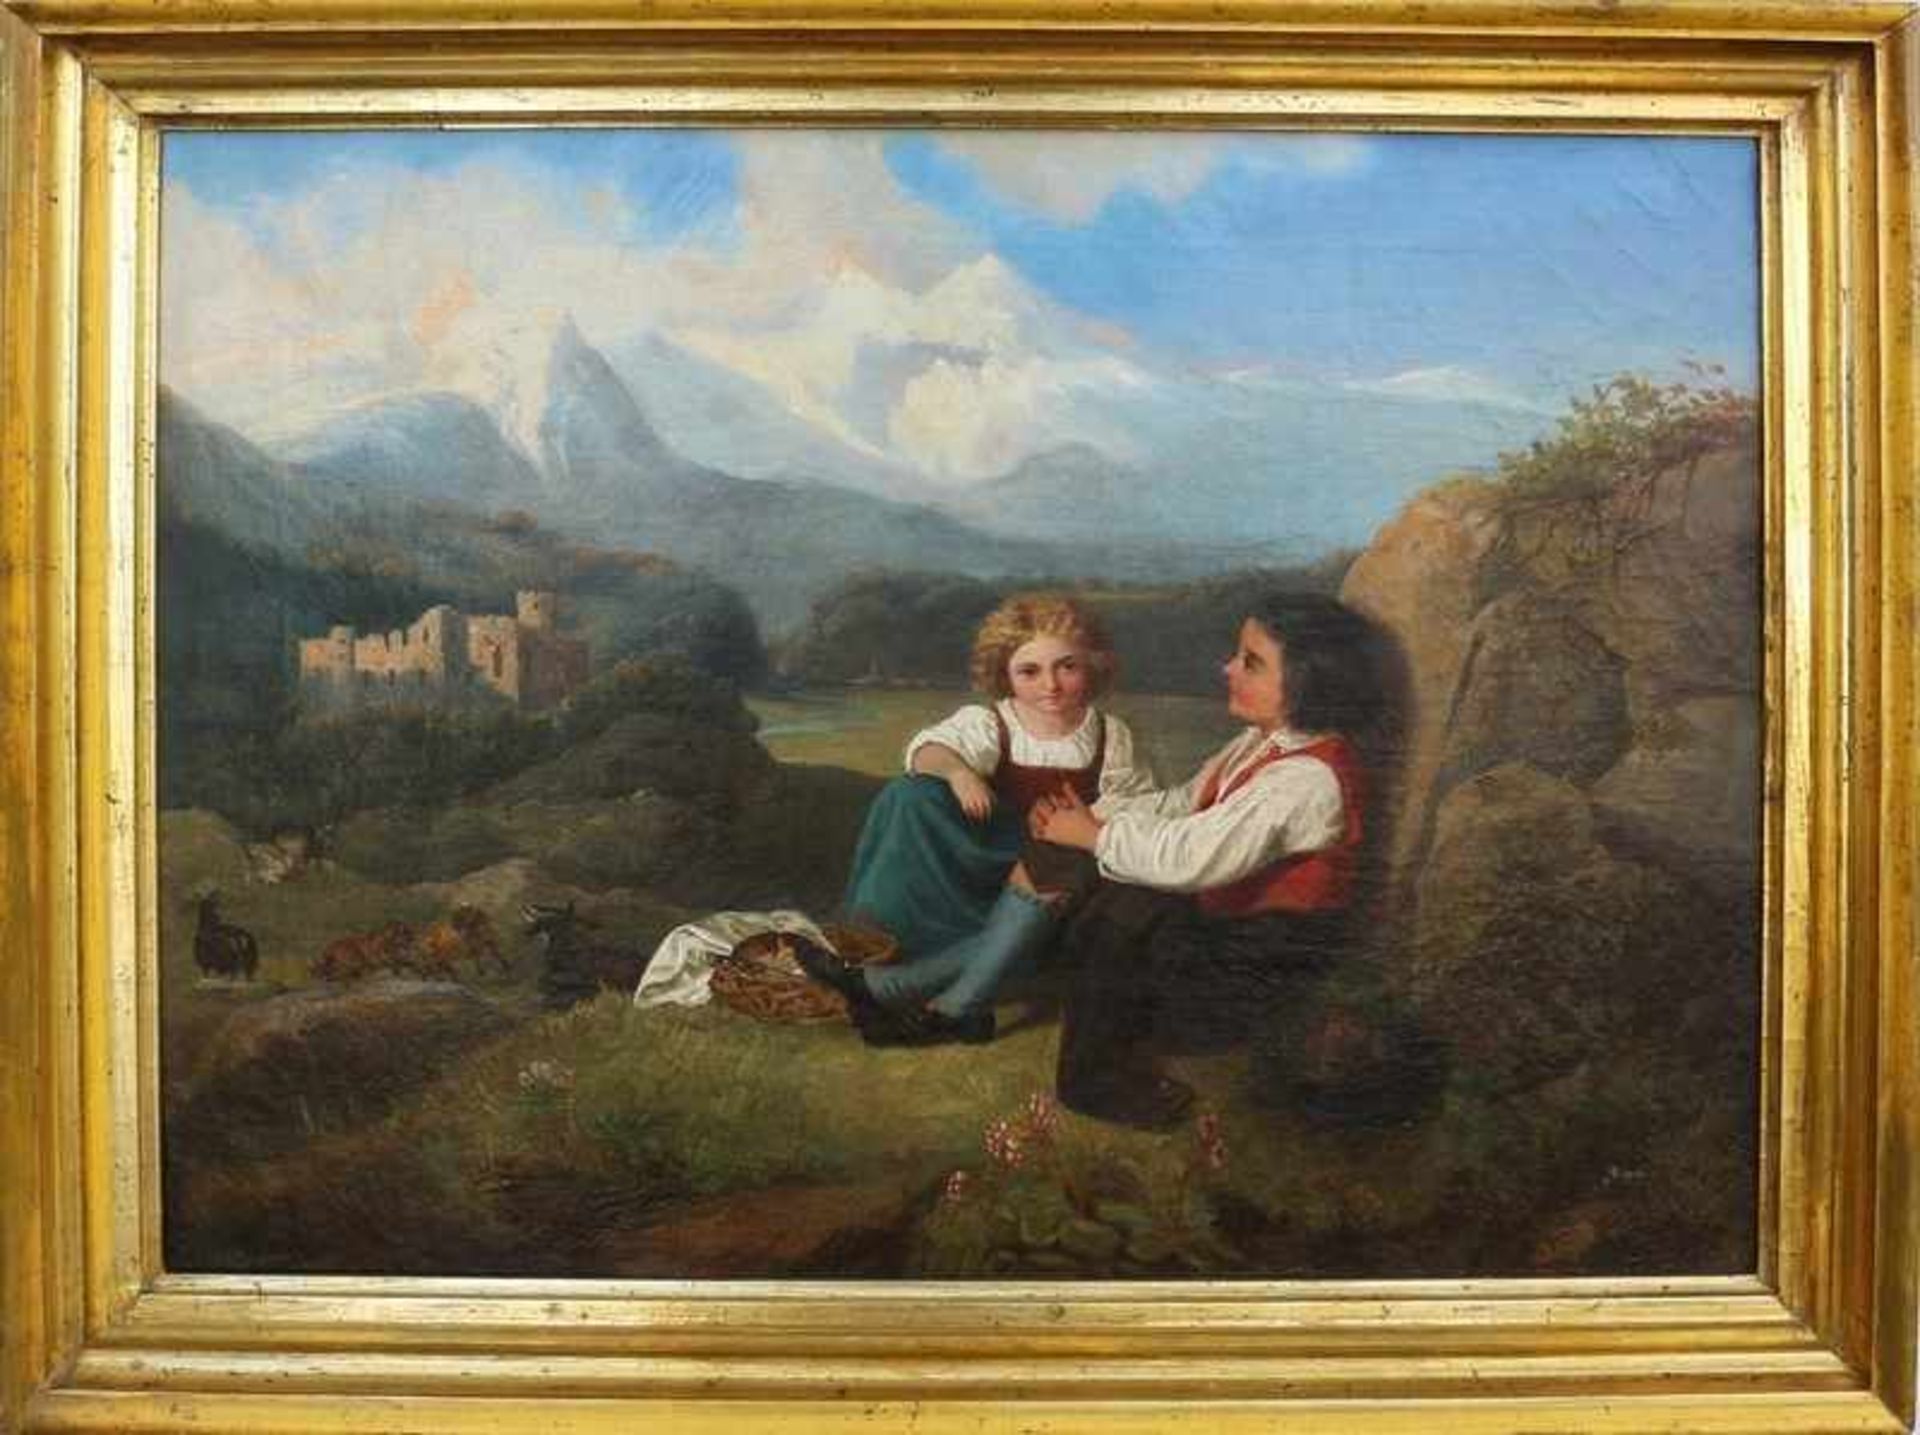 Ebel, Luise dtsch. Landschafts- u. Genremalerin, wohl tätig in Berlin u. München um 1850/60, Lit.: